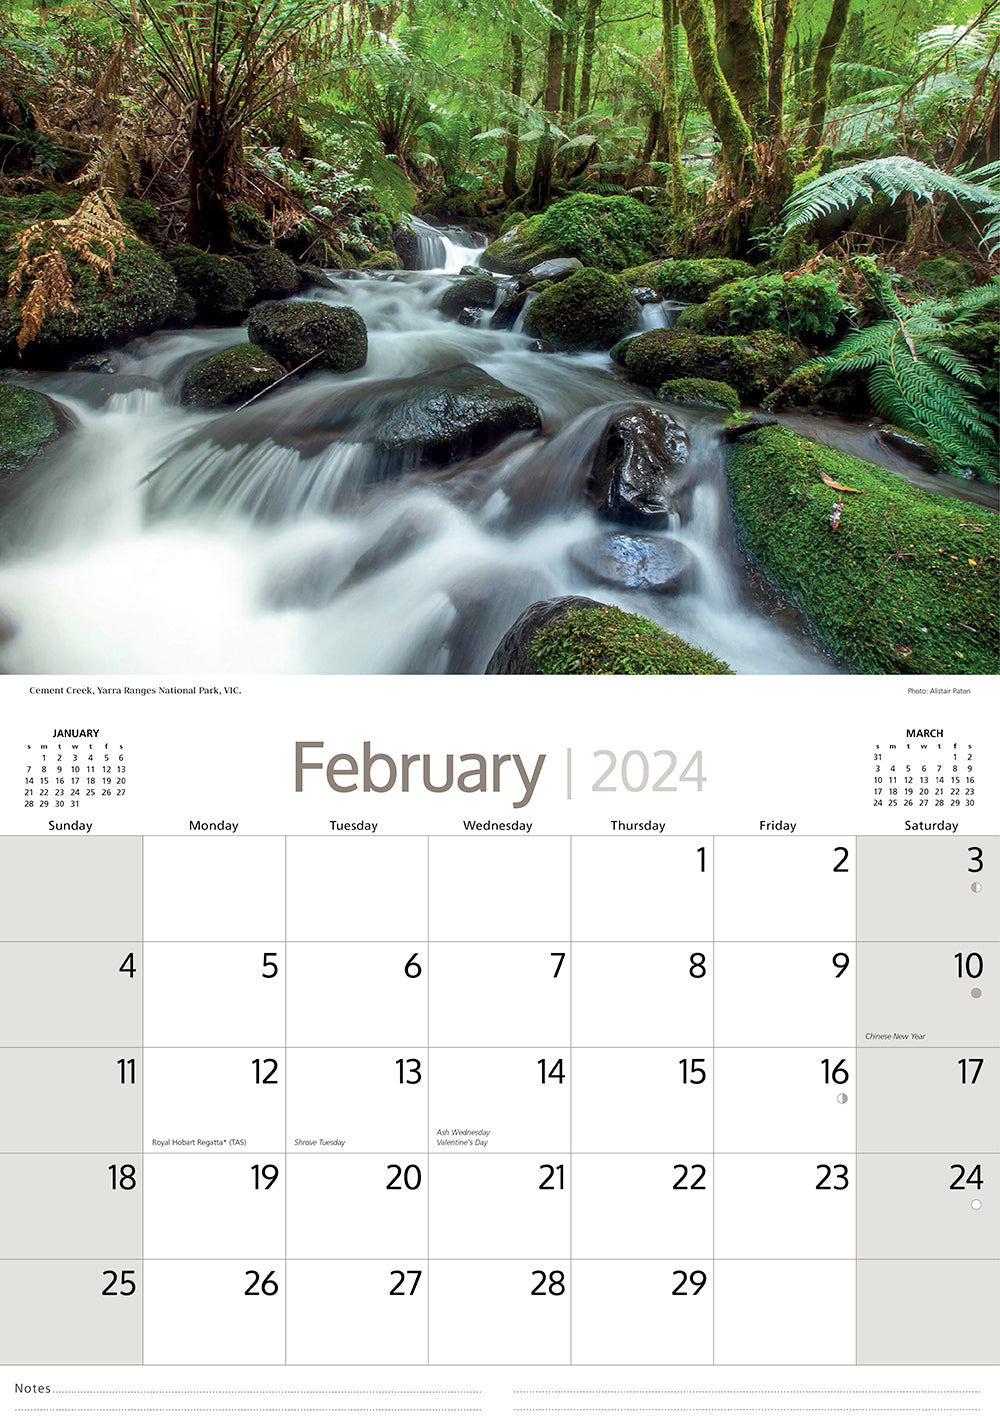 2024 Australian Rainforests (by Artique) - Horizontal Wall Calendar